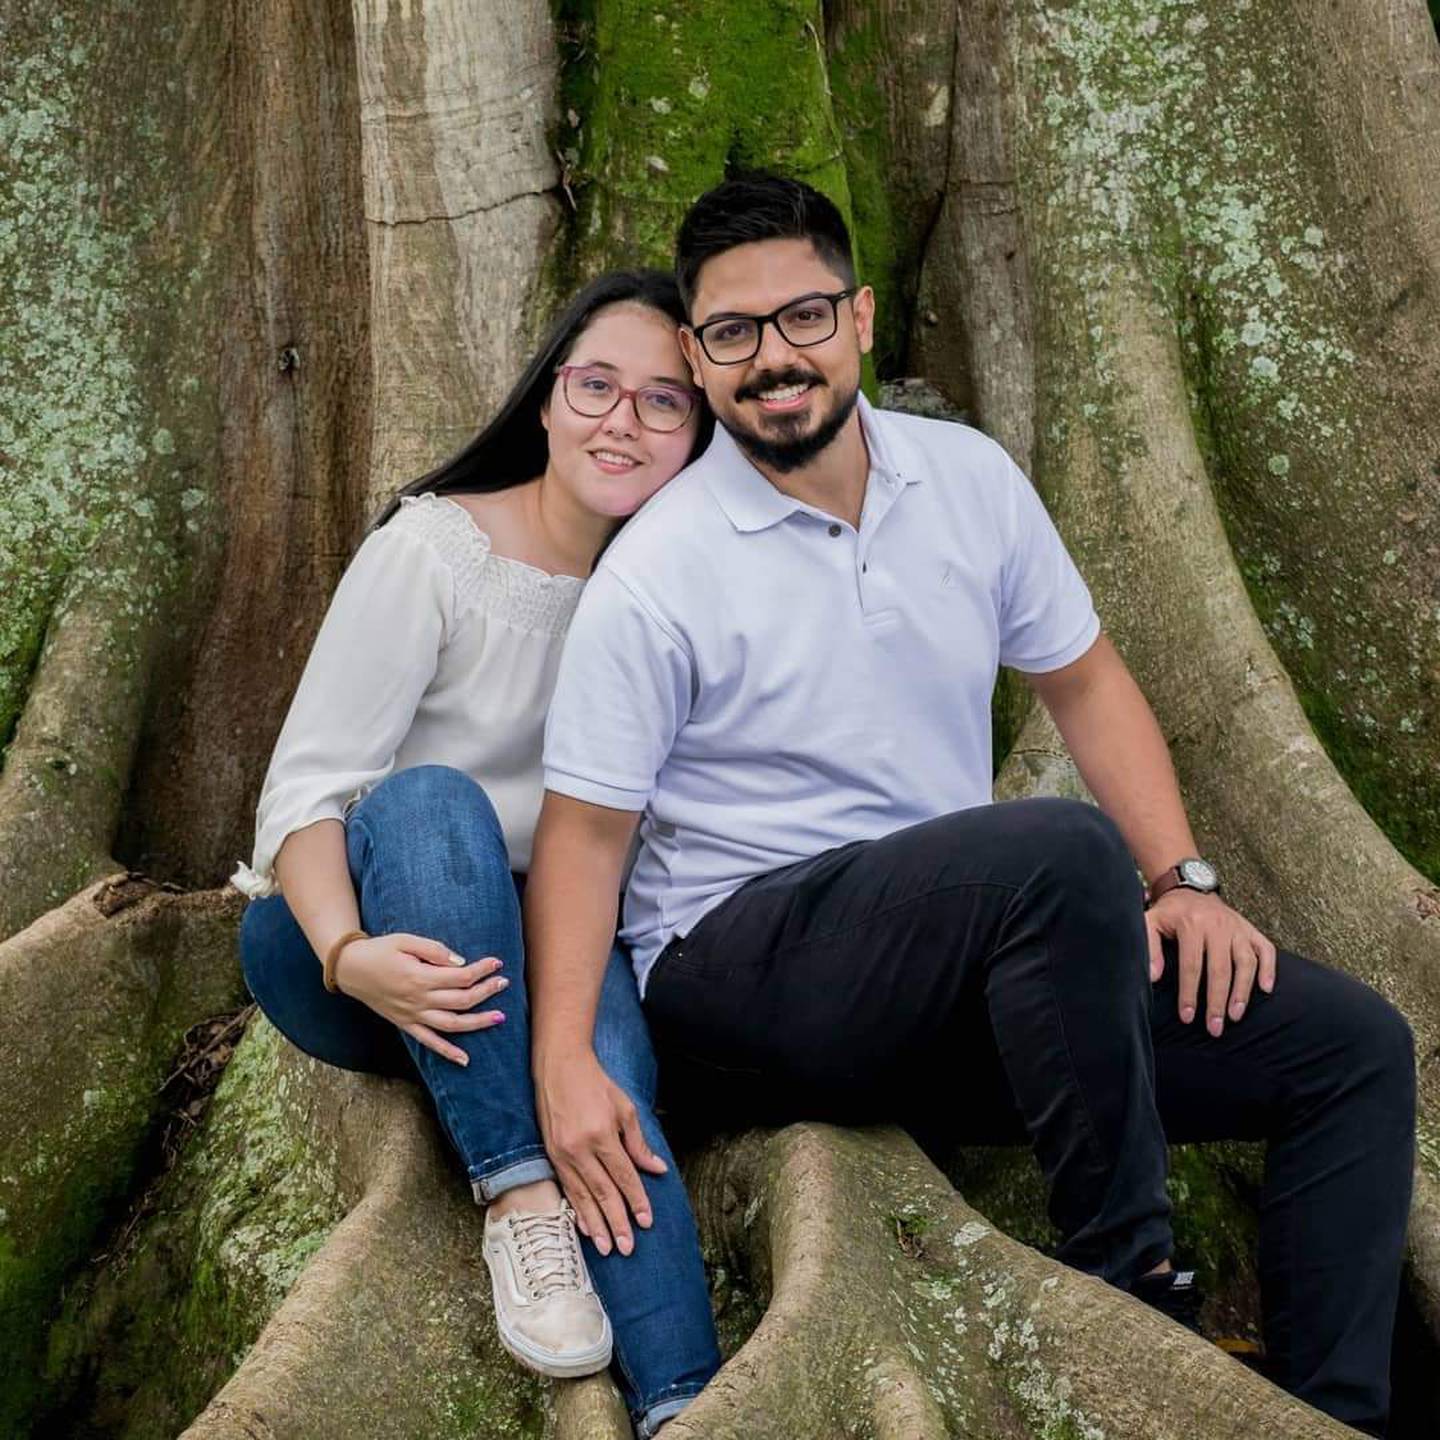 El próximo sábado 28 de noviembre, en el Museo de los Niños, Keyla Milton Barrantes y Luis Rodríguez Aguilar, se casarán a las cuatro y media de la tarde, al ser la pareja que ganó un concurso que hizo el Museo vía redes sociales